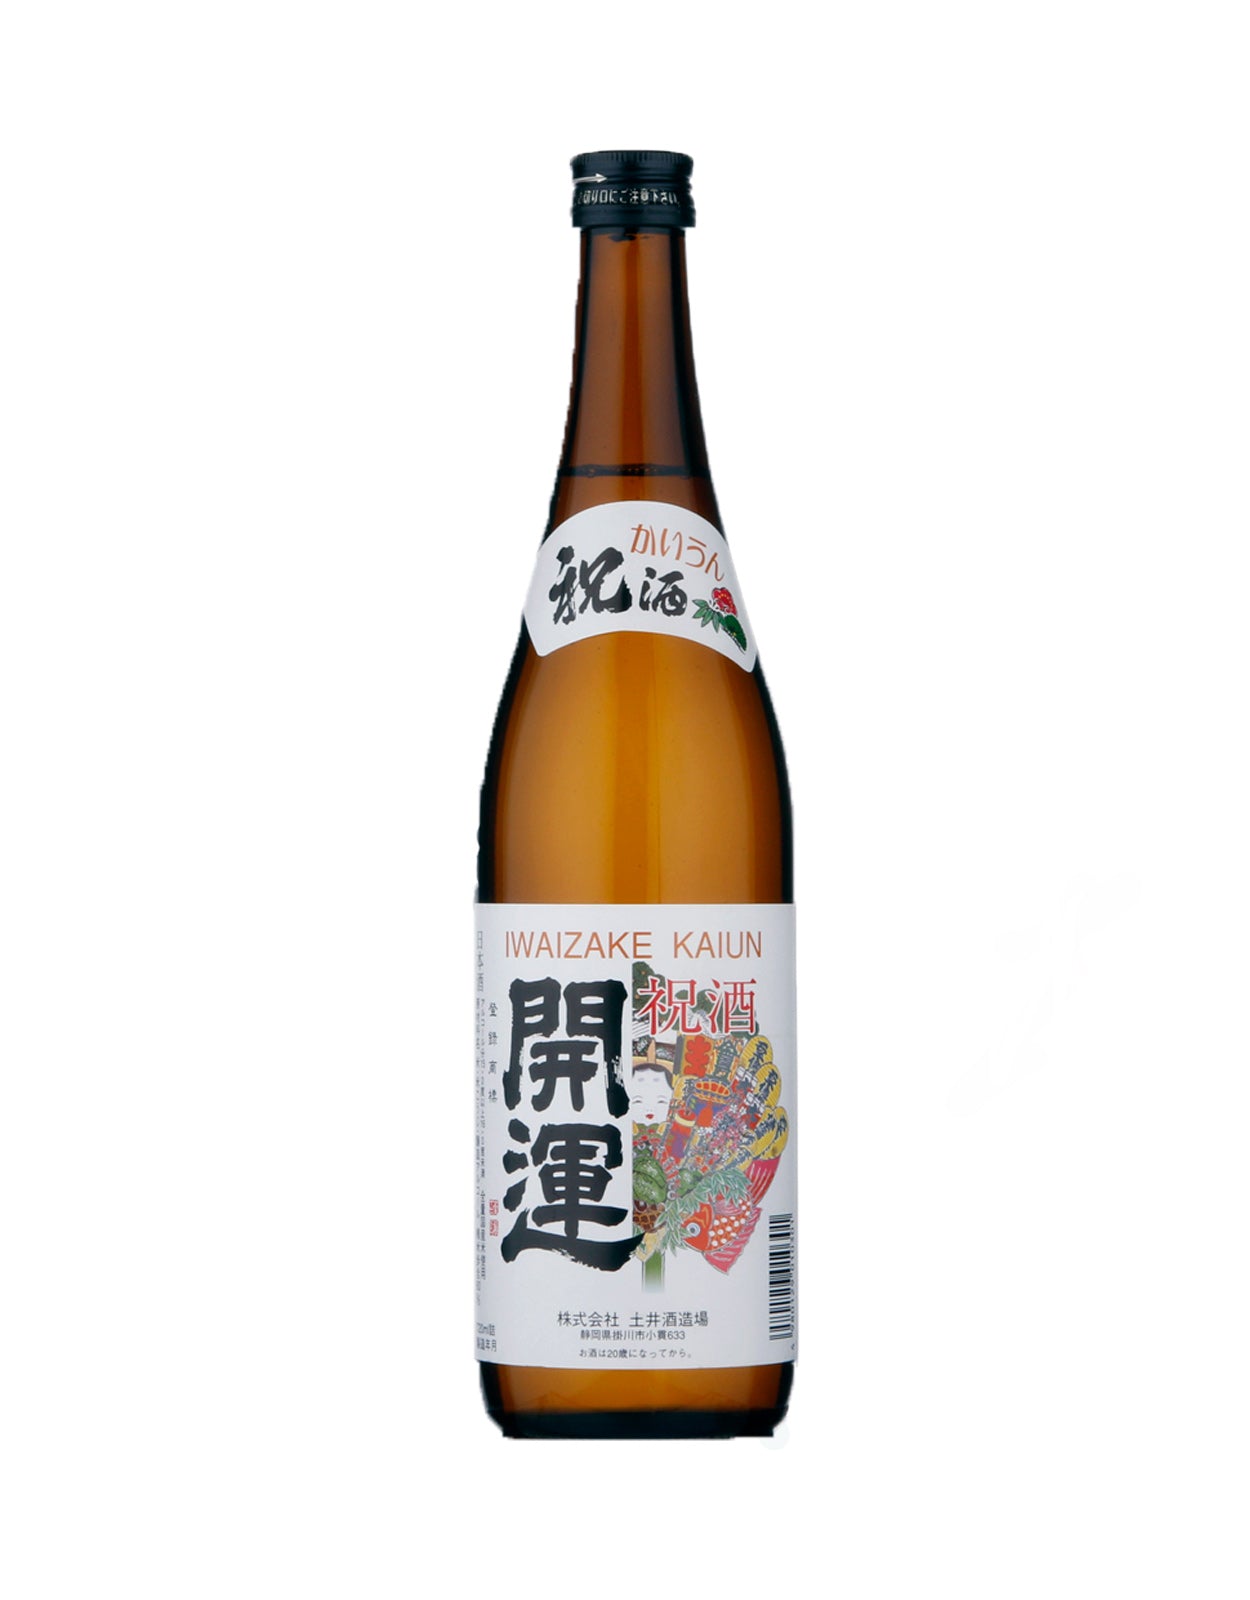 Doi Shuzo Kaiun Iwaizake Tokubetsu Honjozo Sake - 300 ml